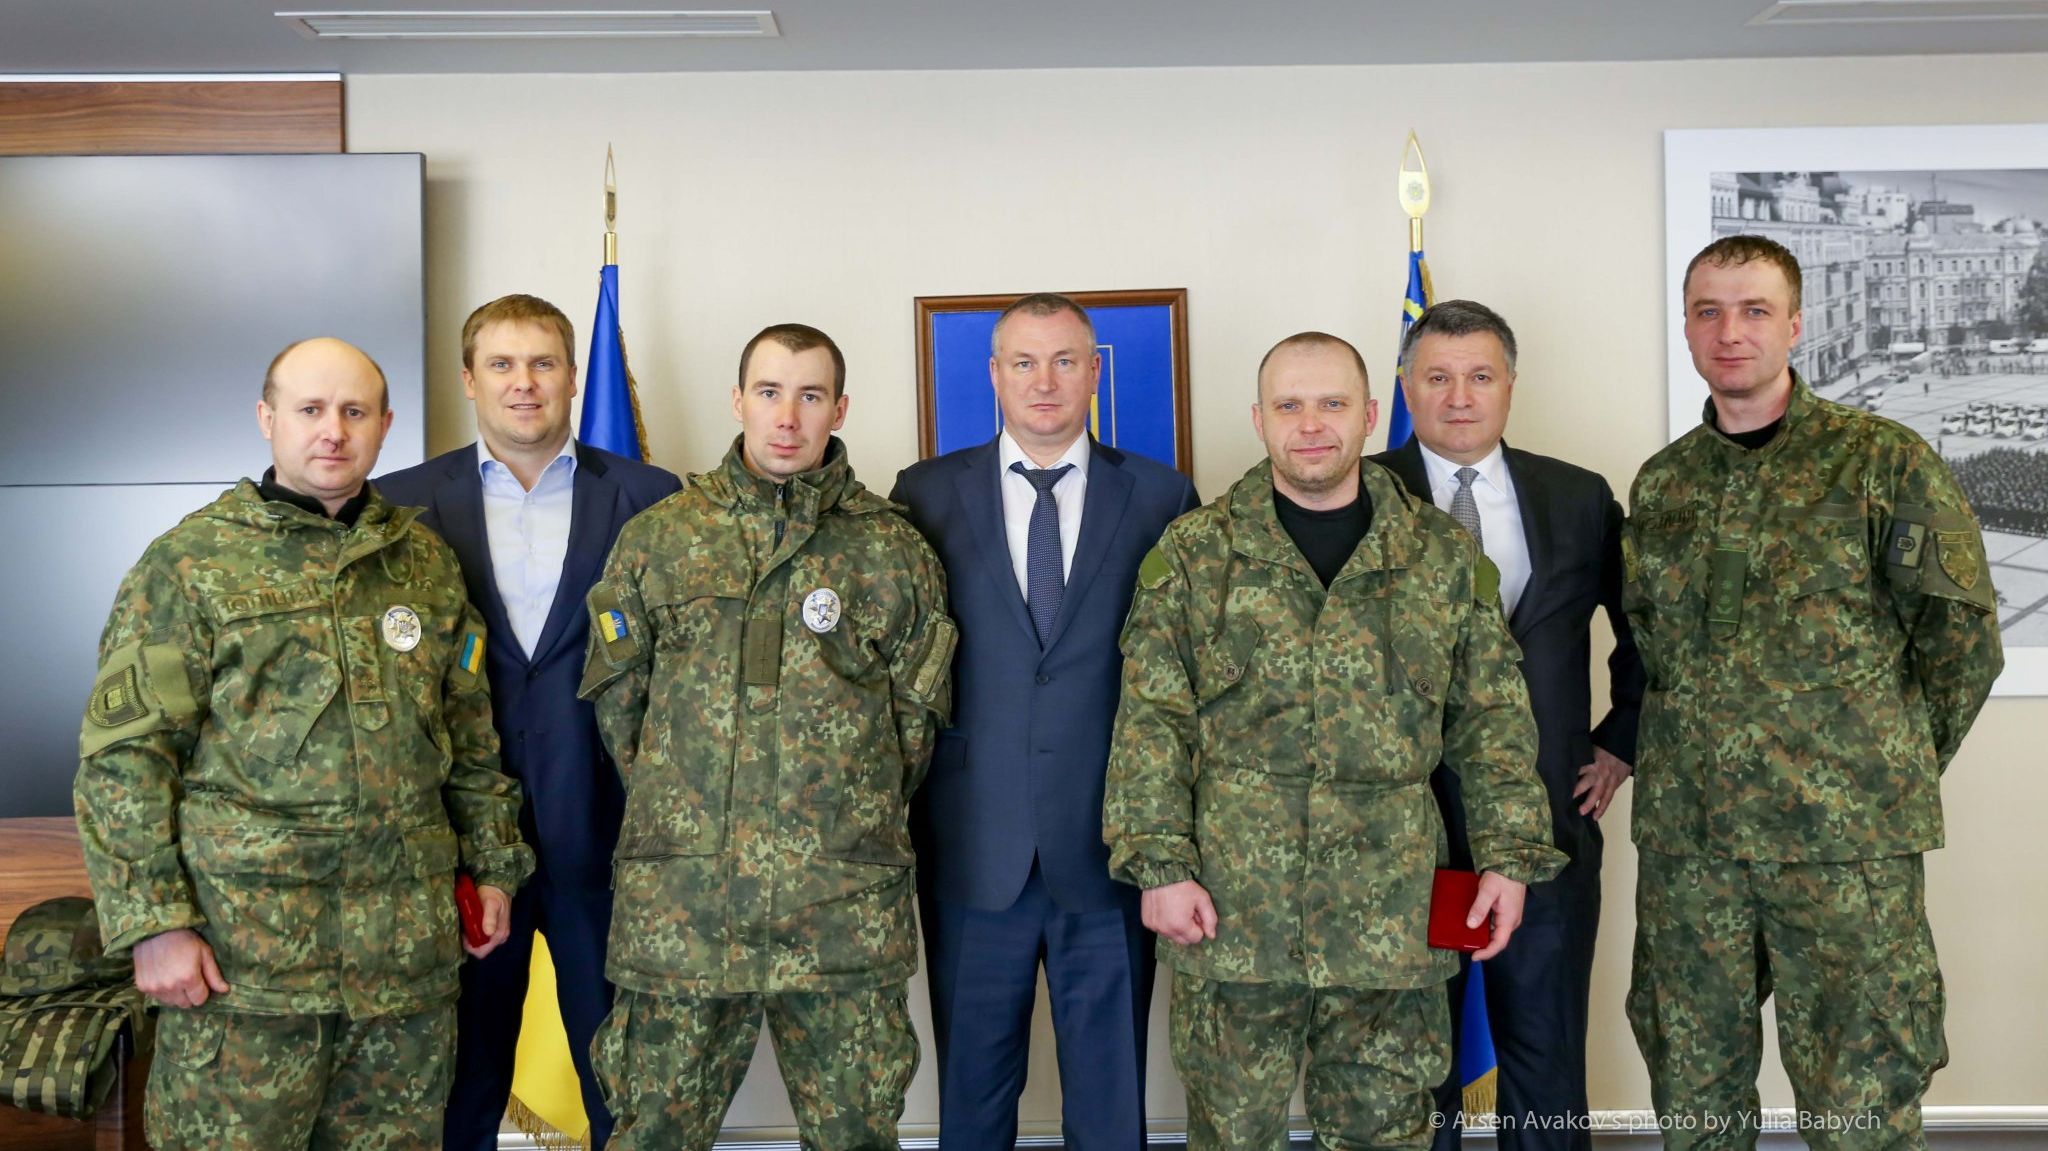 Аваков наградил орденами "За отвагу" полицейских, сдержавших Парасюка